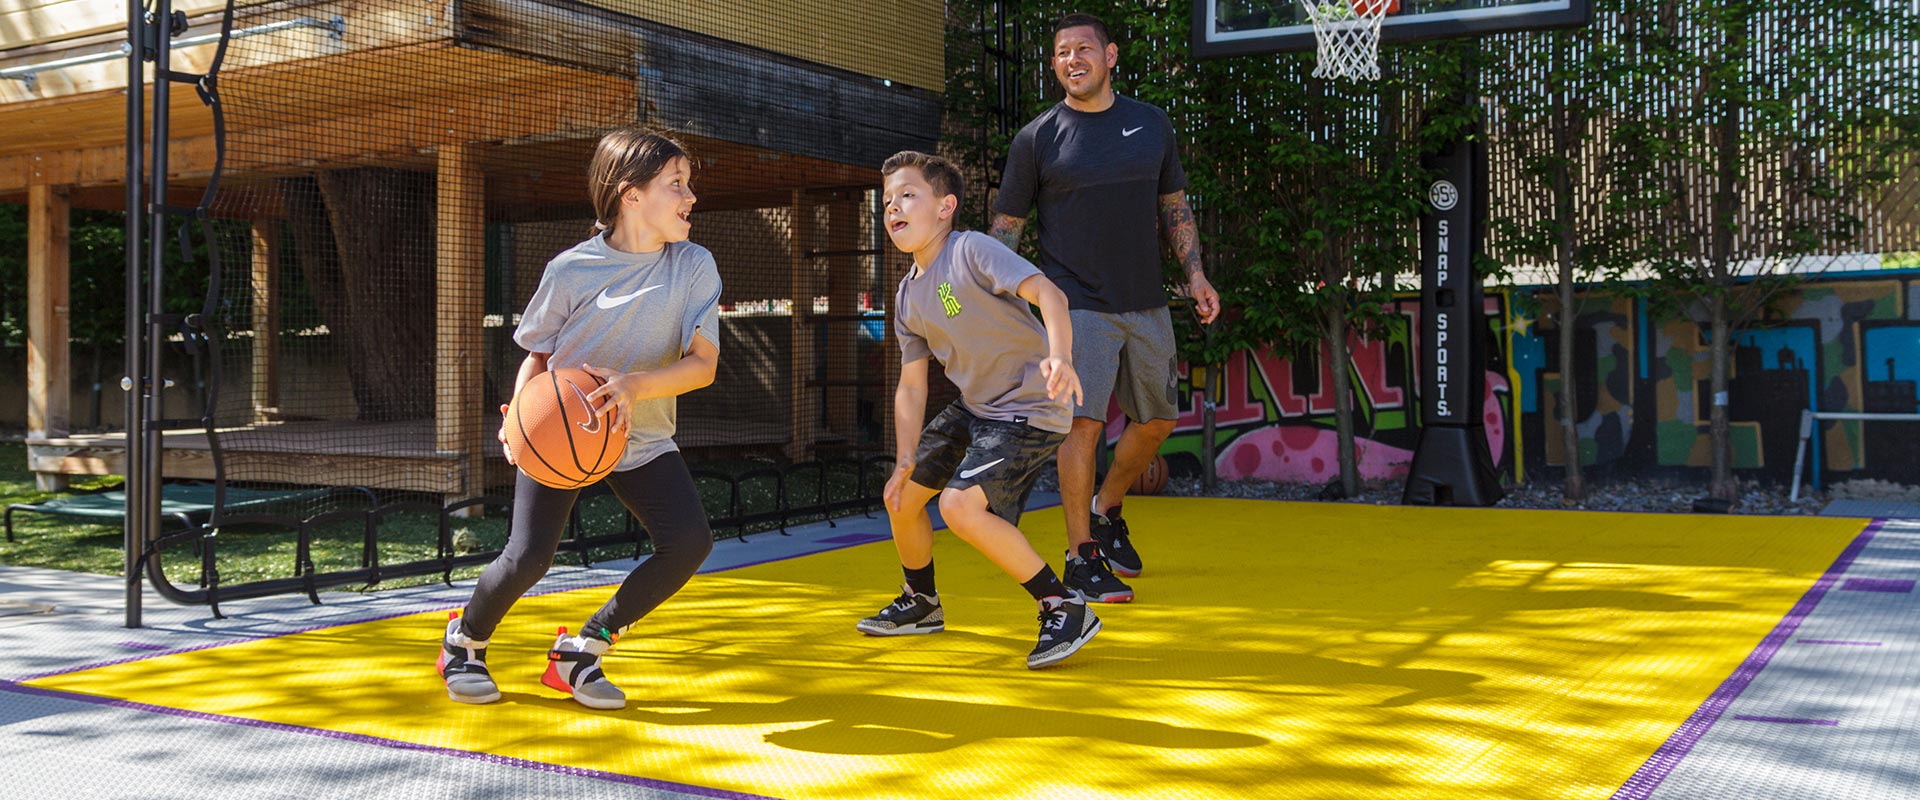 Nick Rimando and his kid play a game of basketball